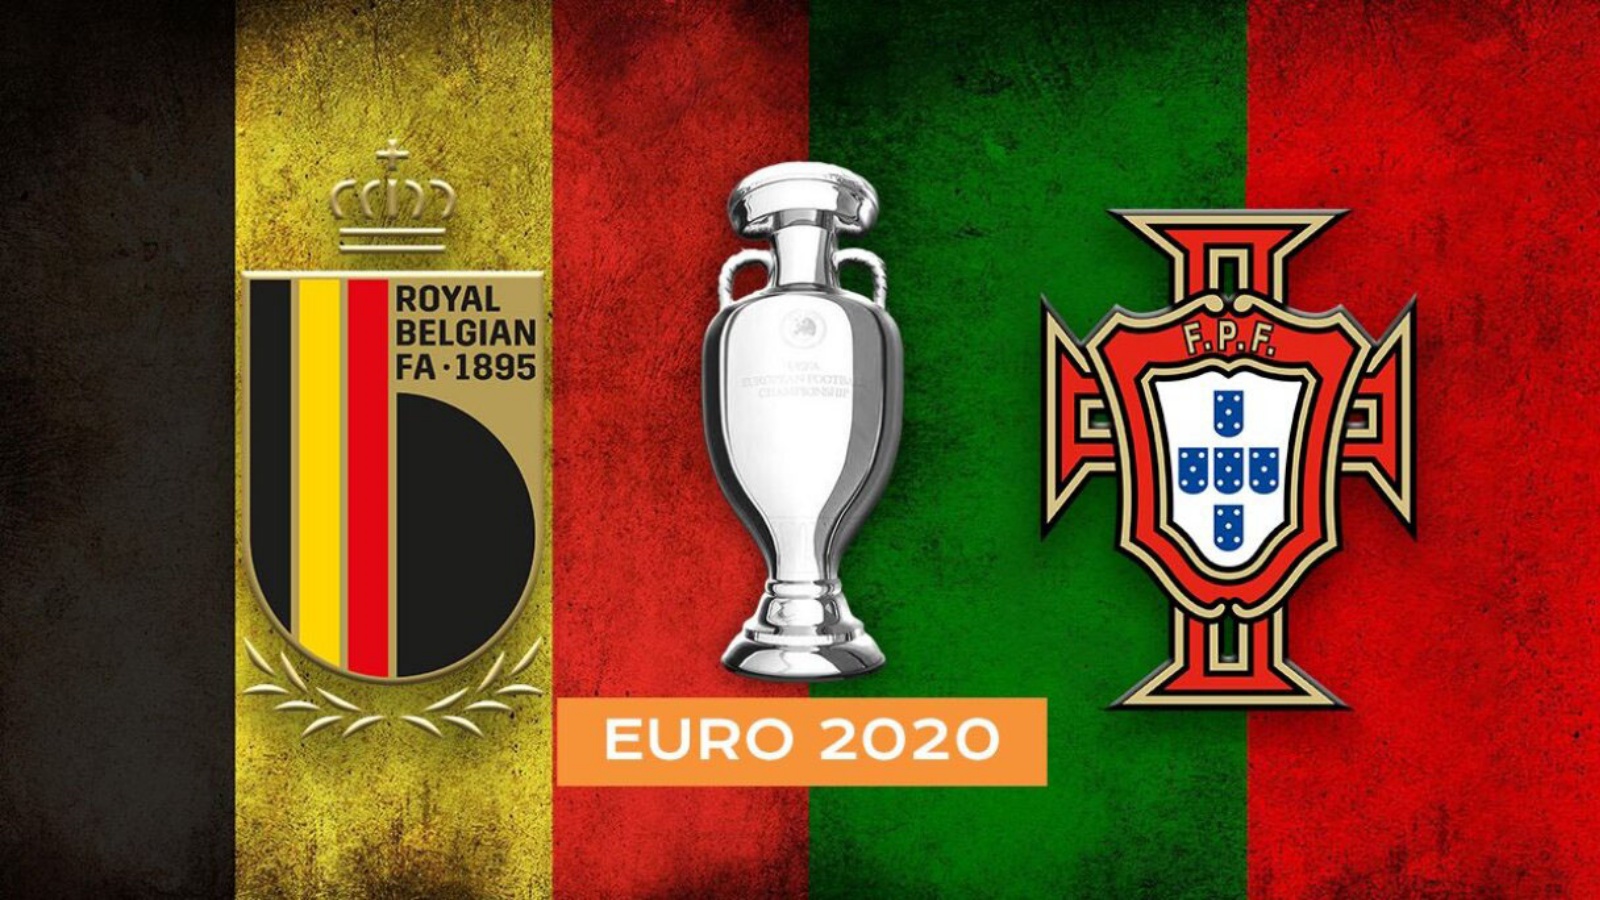 BELGIQUE - PORTUGAL PRO TV LIVE EURO 2020